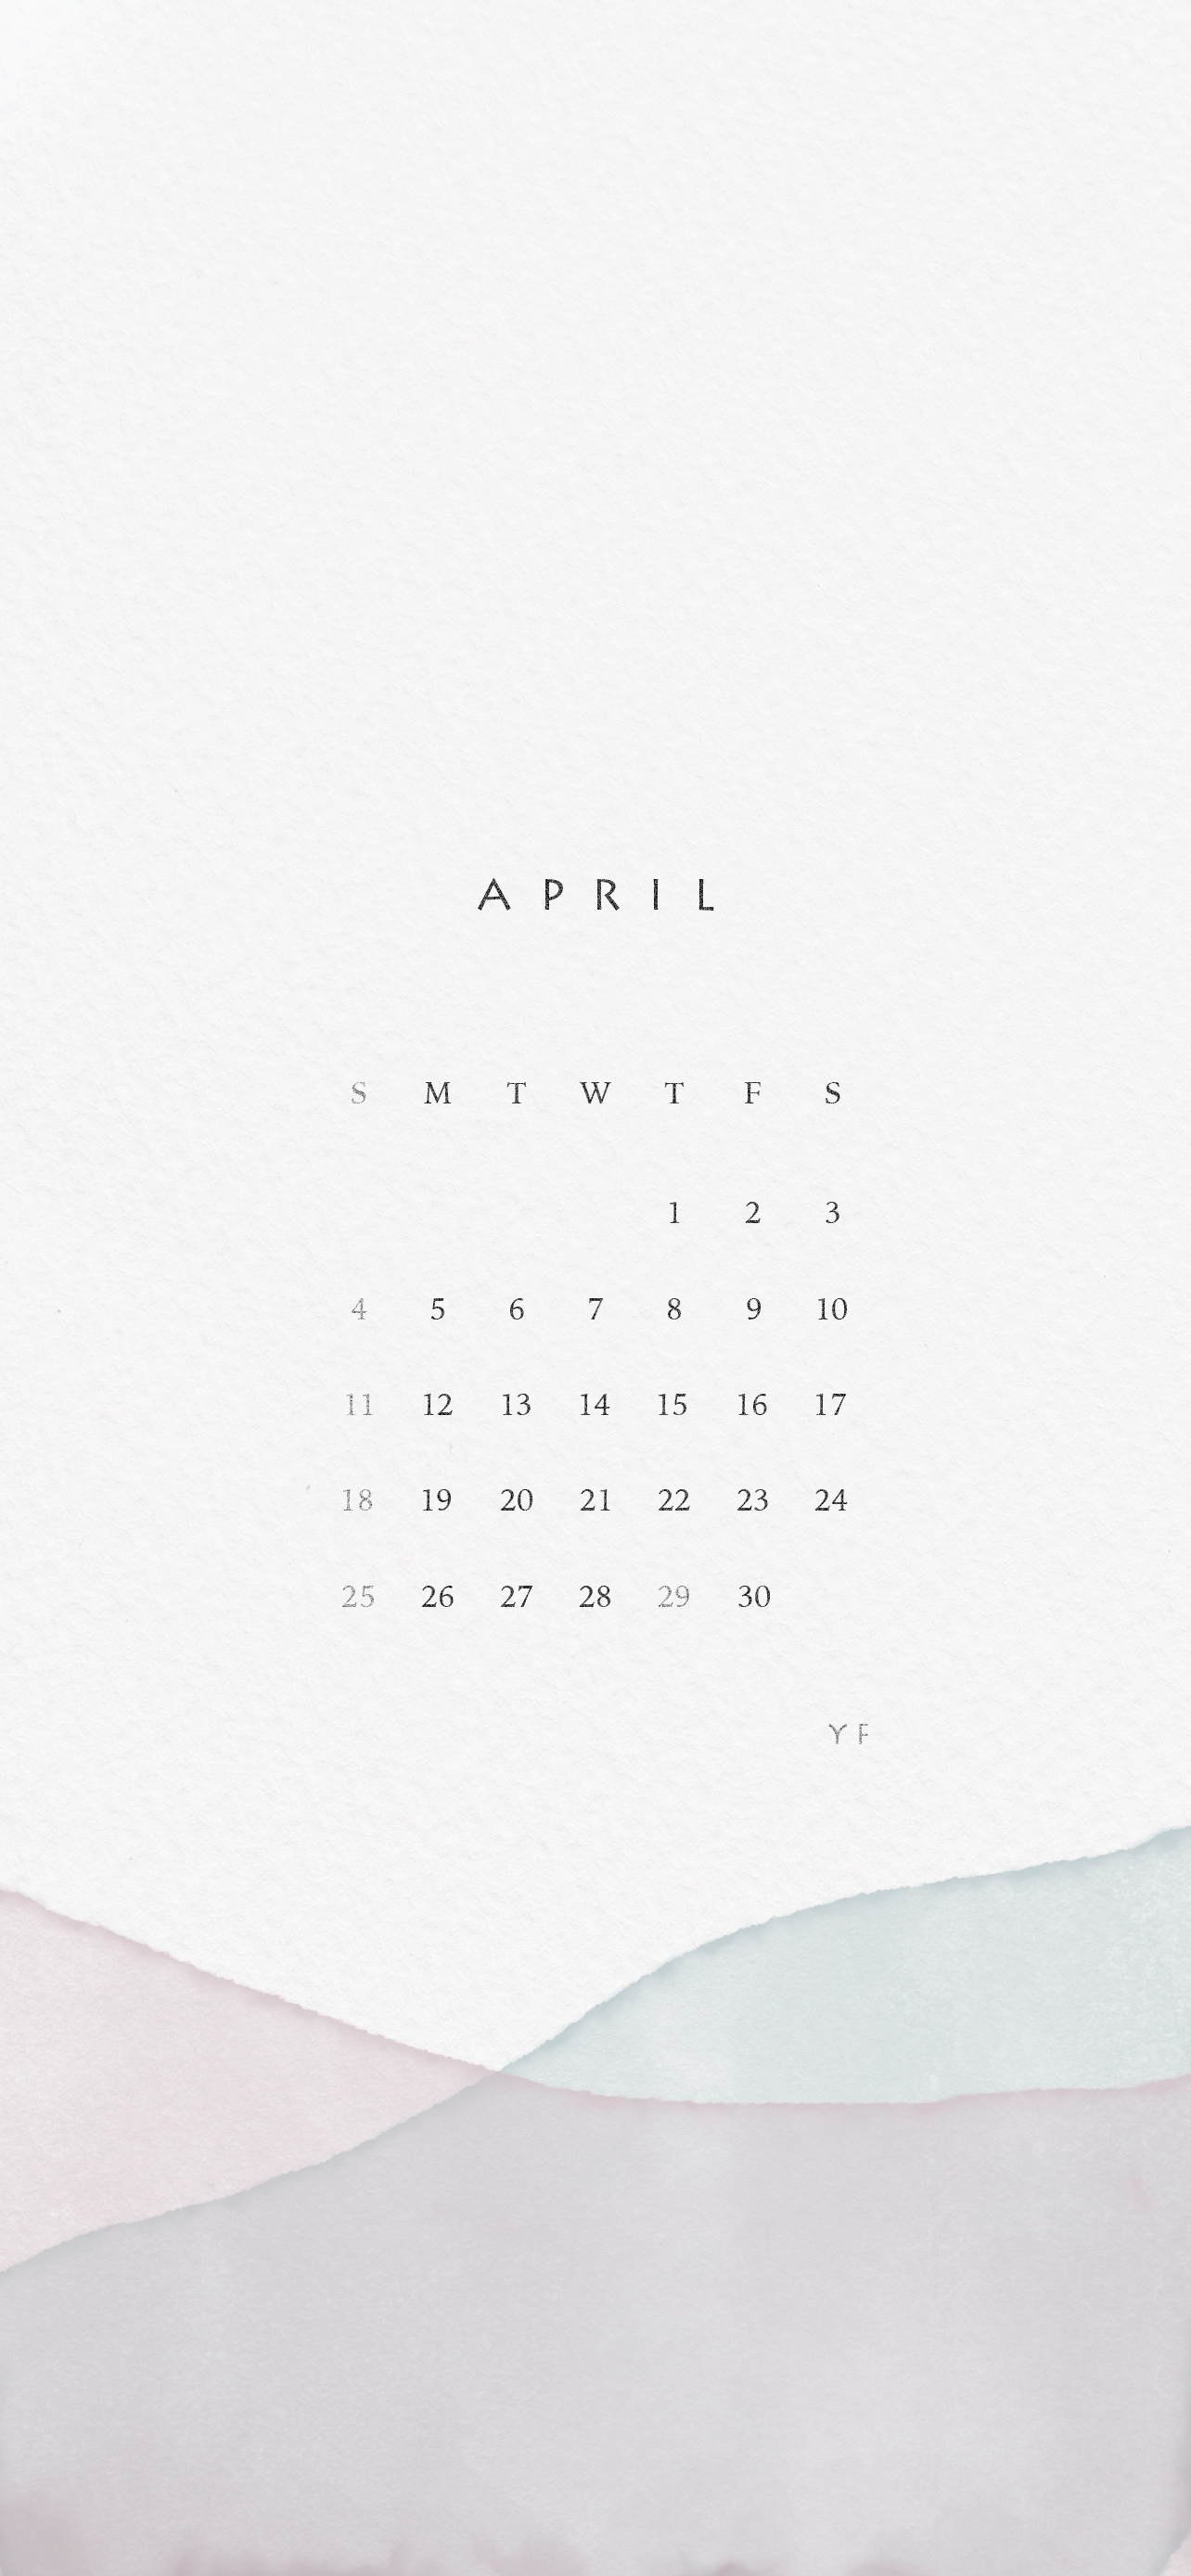 2021年4月のiPhone版日曜日始まりカレンダー壁紙 パープル×ブルー 1284×2778px